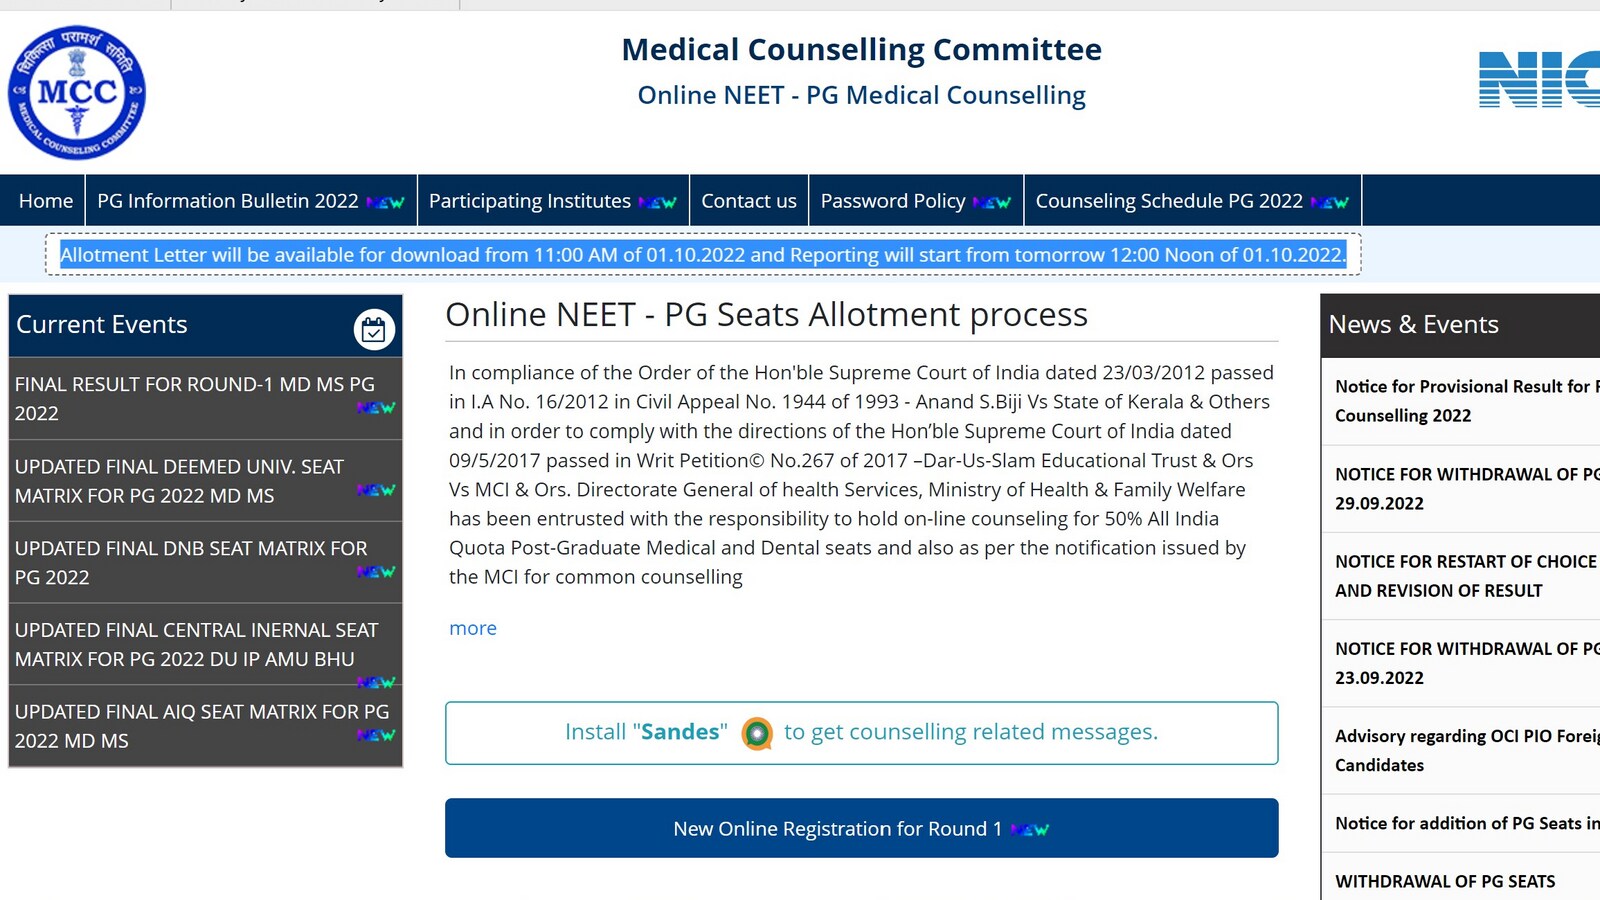 NEET PG काउंसलिंग राउंड 1 सीट आवंटन परिणाम mcc.nic.in पर, लिंक प्राप्त करें